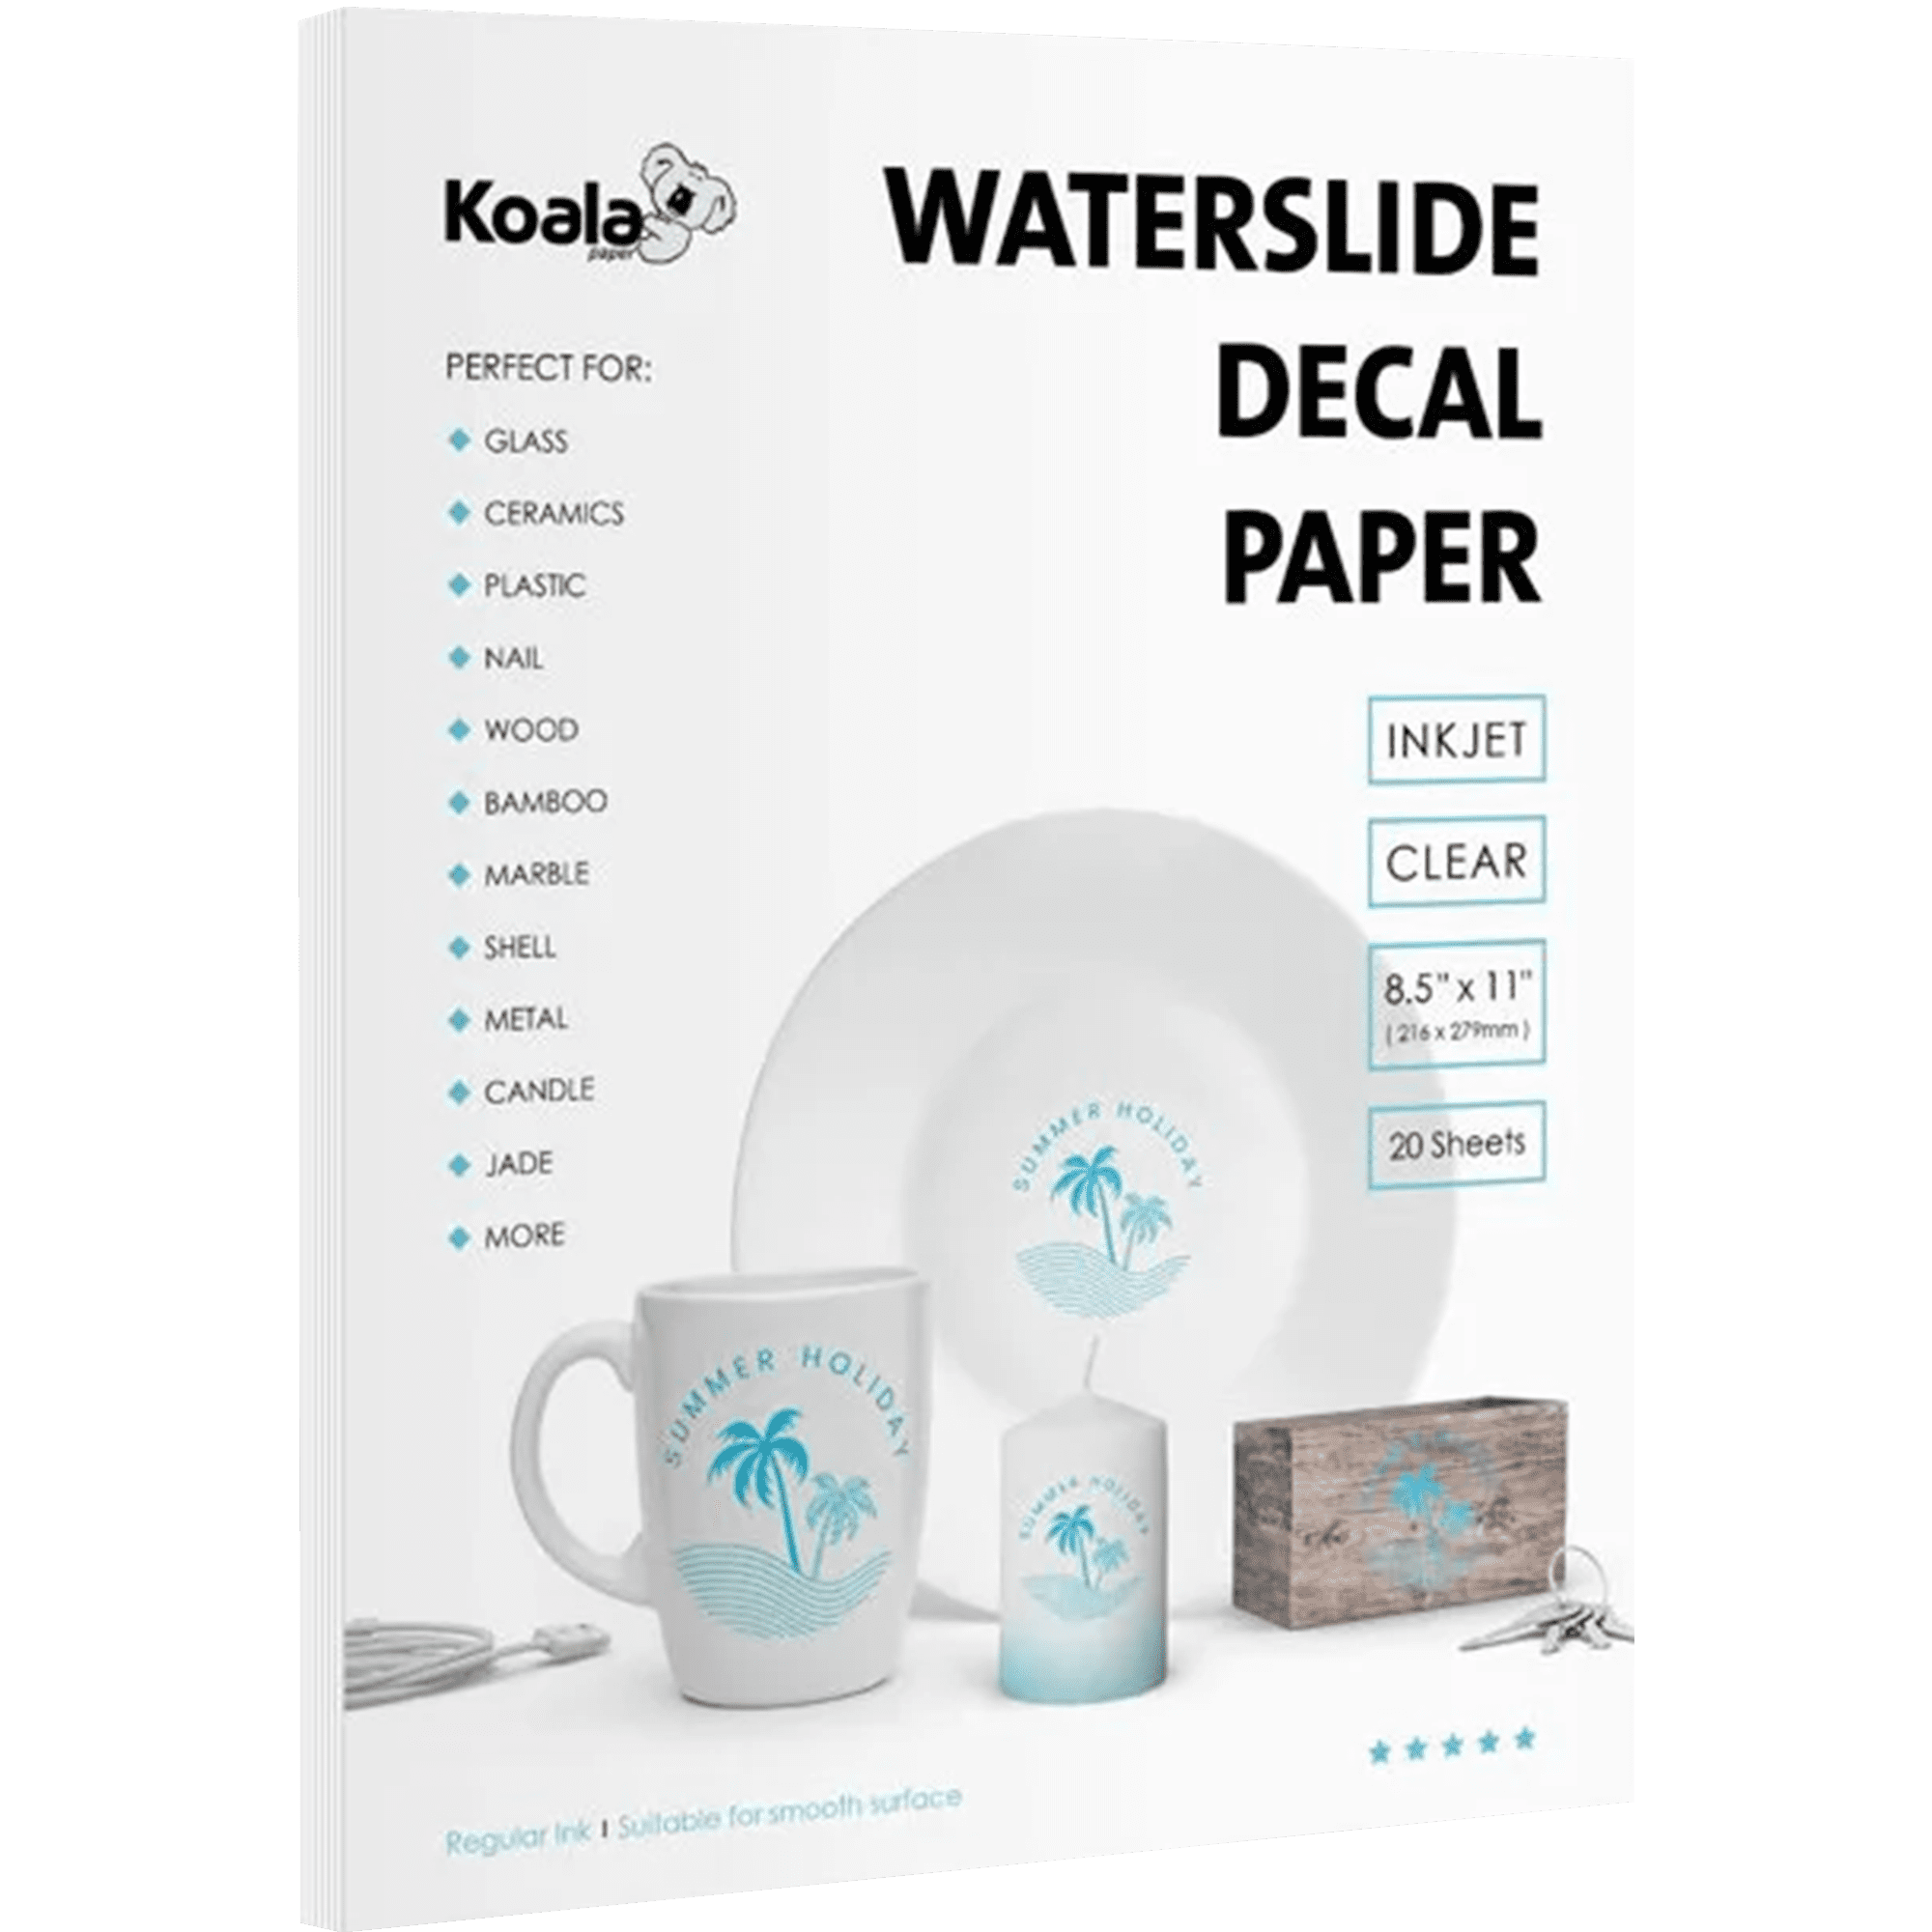 Waterslide Decals - Inkjet Transparent